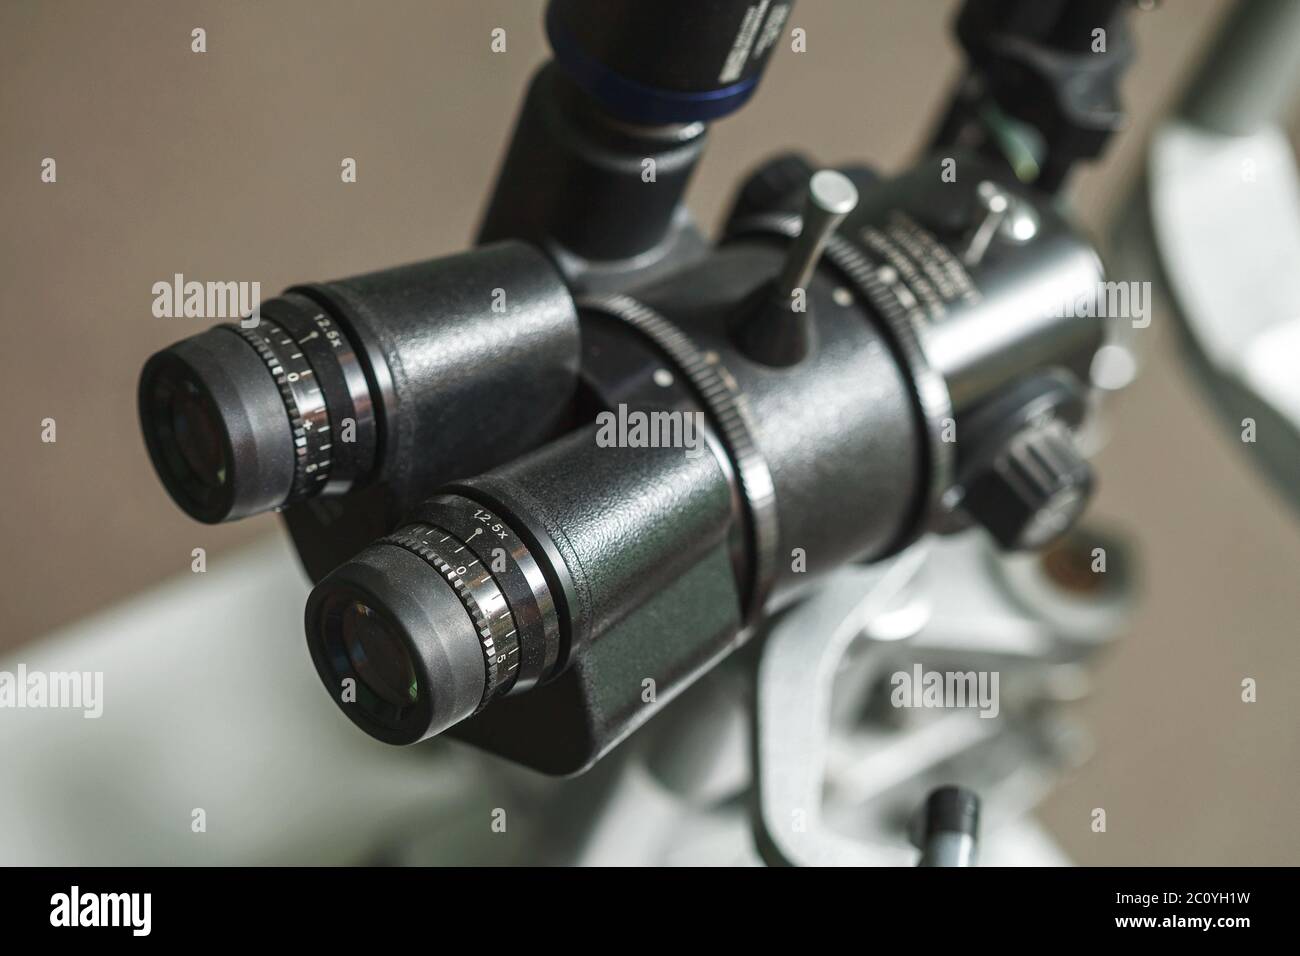 Medical all'ottico optometrista le attrezzature utilizzate per gli esami oculistici Foto Stock